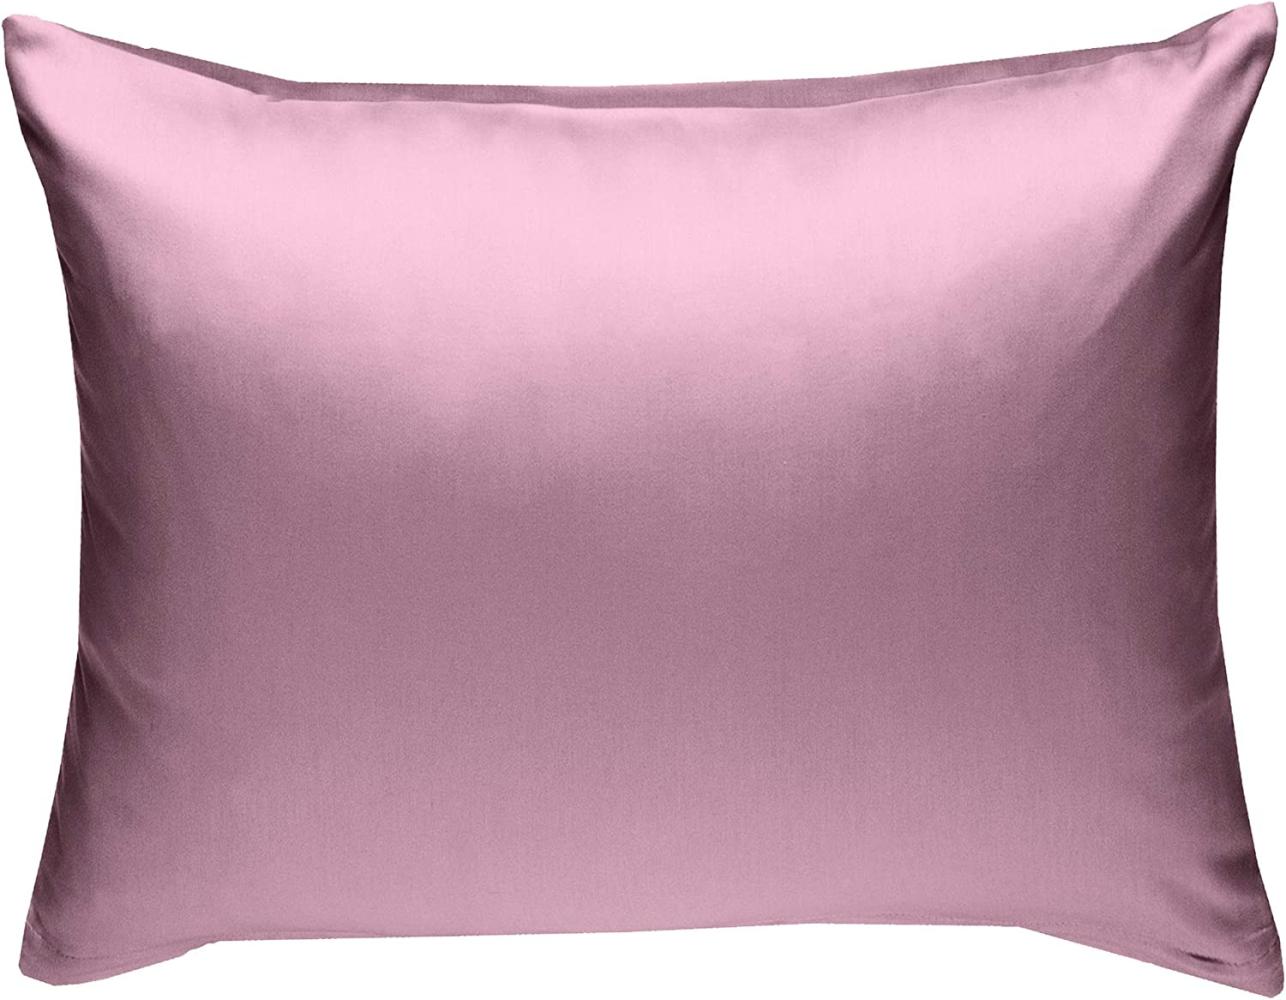 Bettwaesche-mit-Stil Mako-Satin / Baumwollsatin Bettwäsche uni / einfarbig rosa Kissenbezug 70x90 cm Bild 1